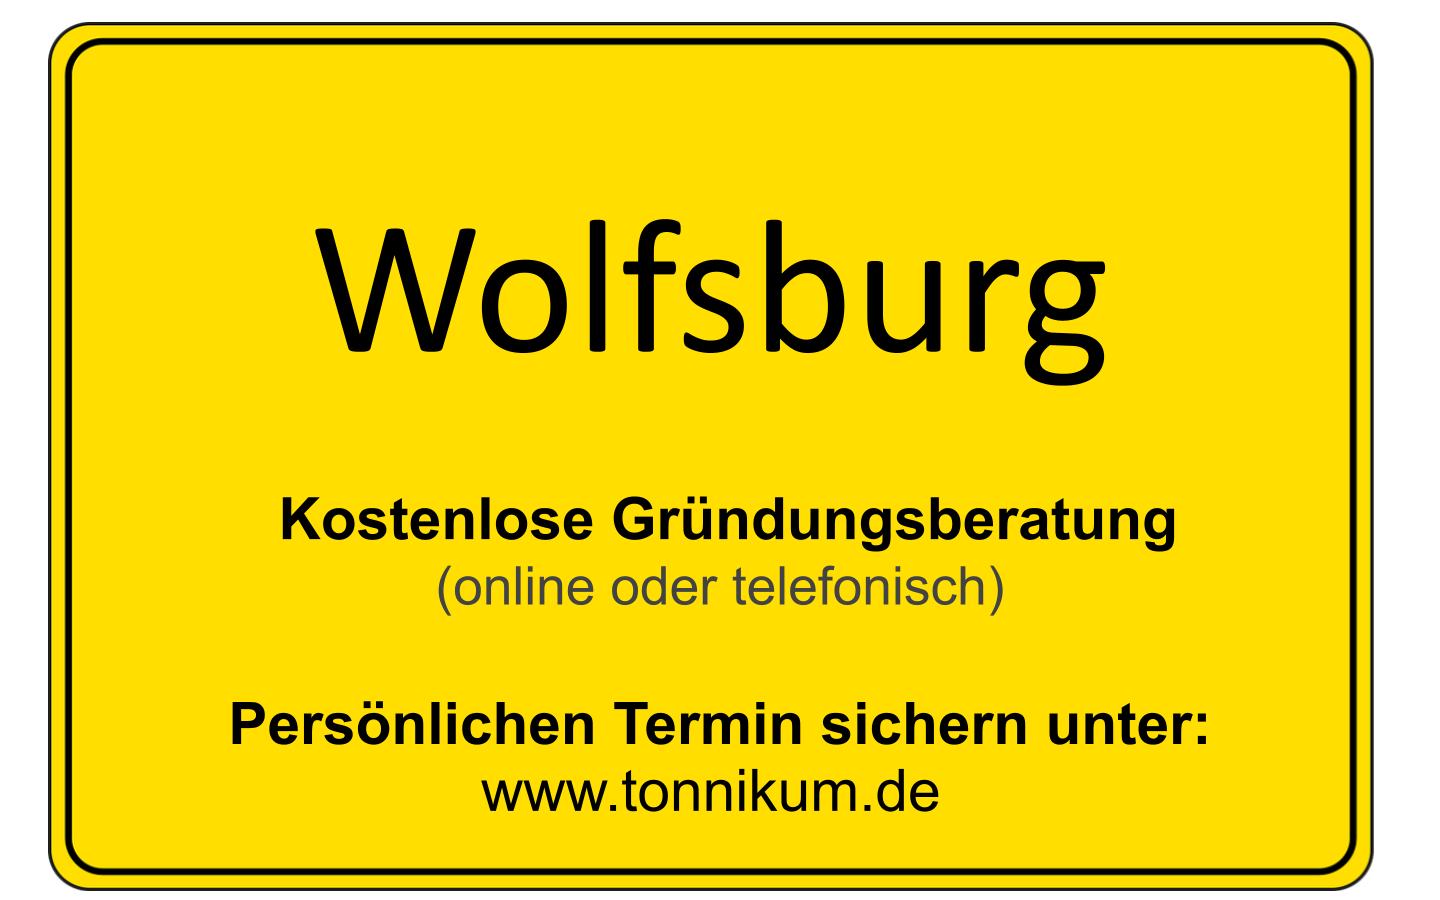 Wolfsburg Beratung Existenzgründung  ⇒ kostenloses Erstgespräch